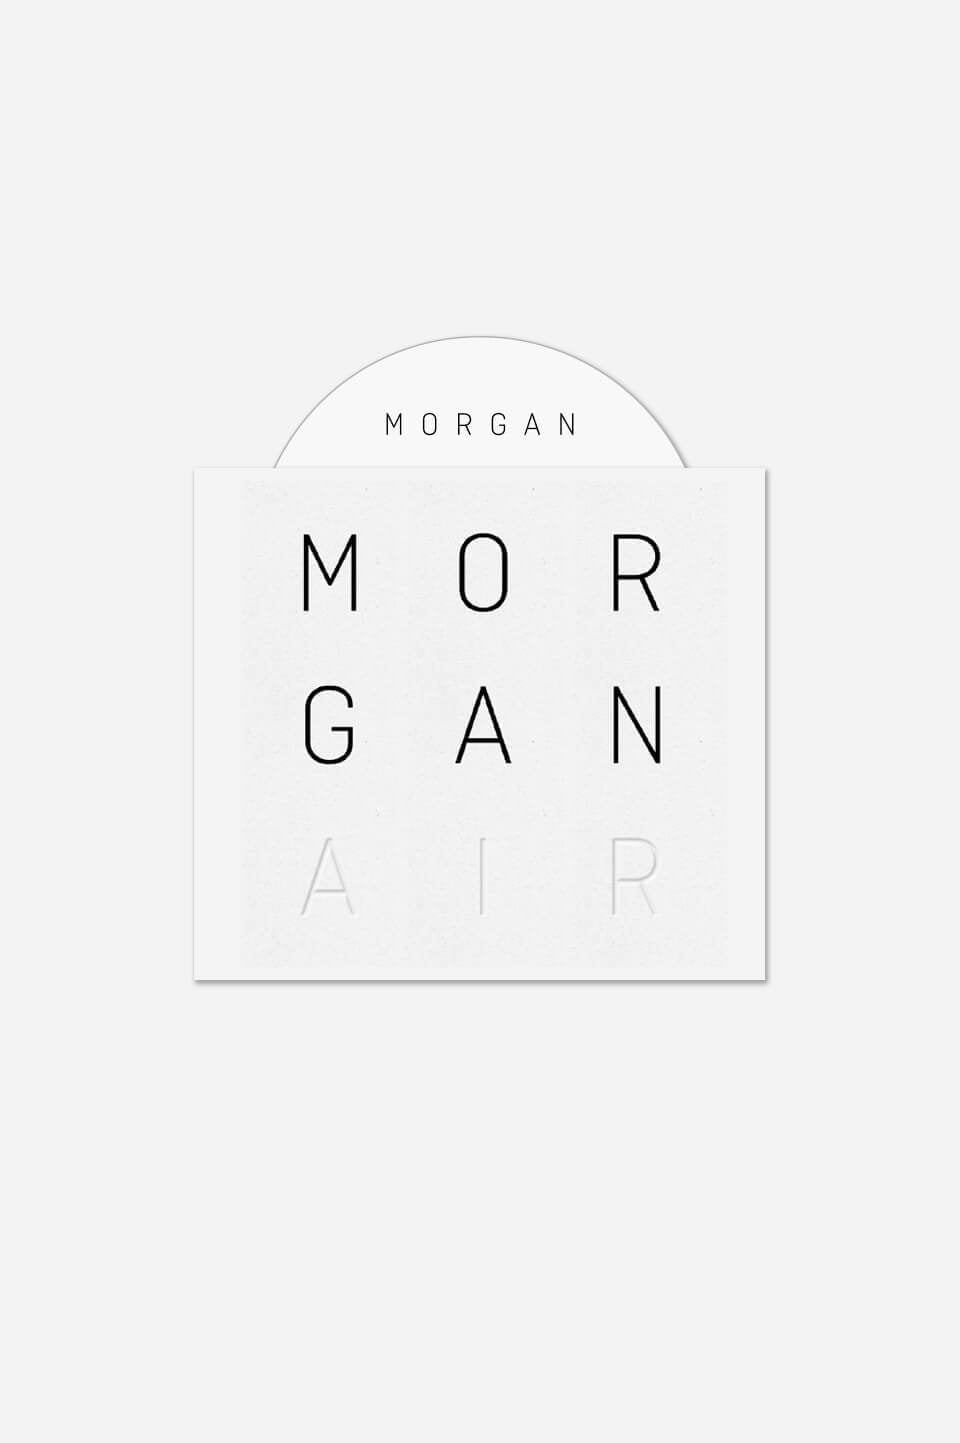 Morgan - CD "Air" - Rocktud - Morgan